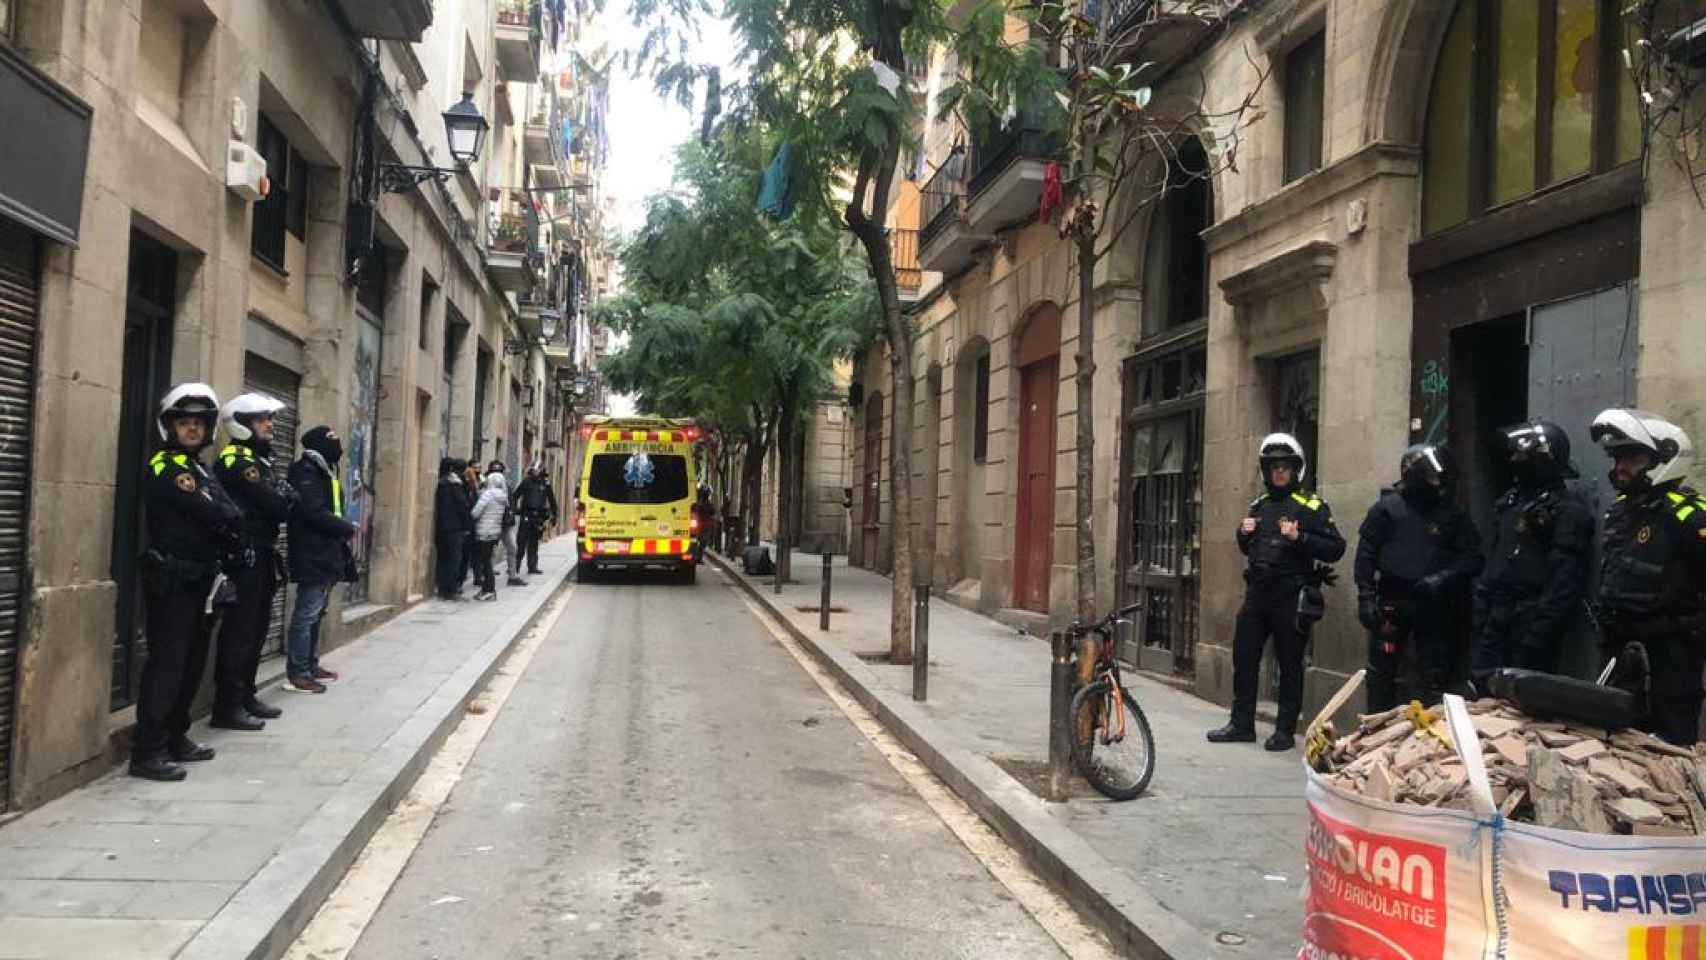 Guardia Urbana y Mossos d'Esquadra en un operativo contra los narcopisos en la calle Príncep de Viana / GU